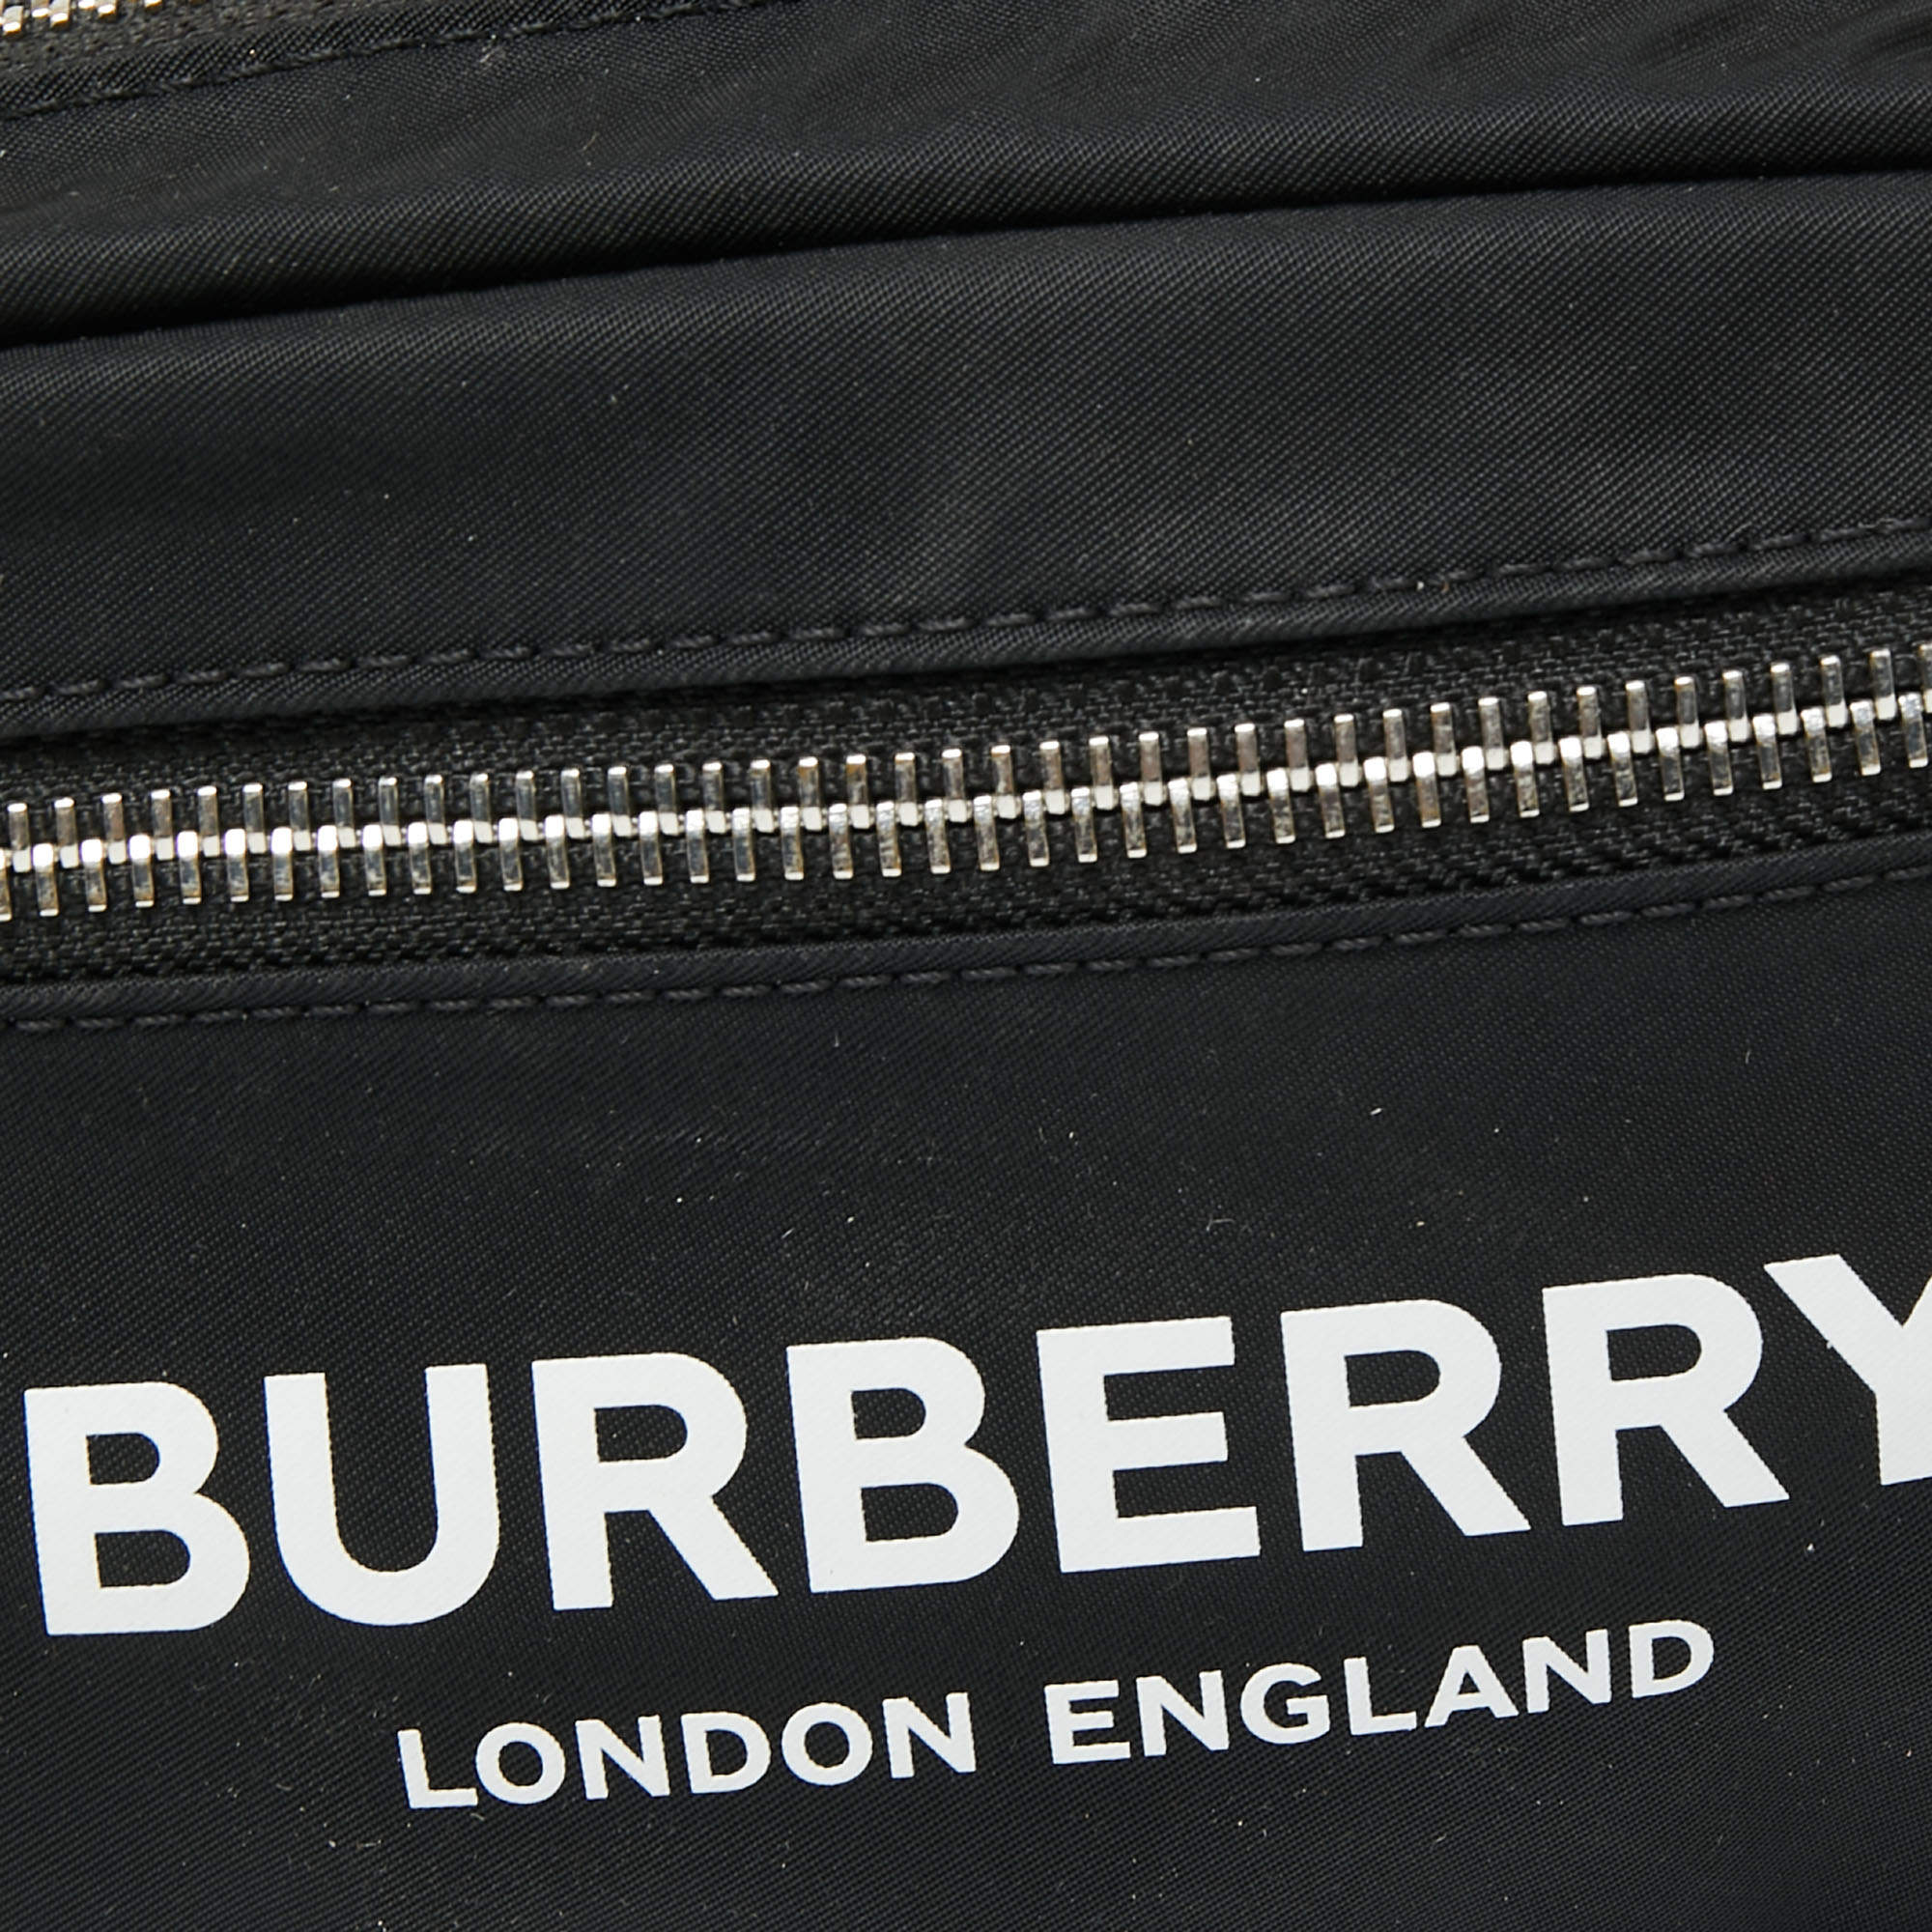 Burberry Black Nylon Cannon Belt Bag QKB35V21KB009